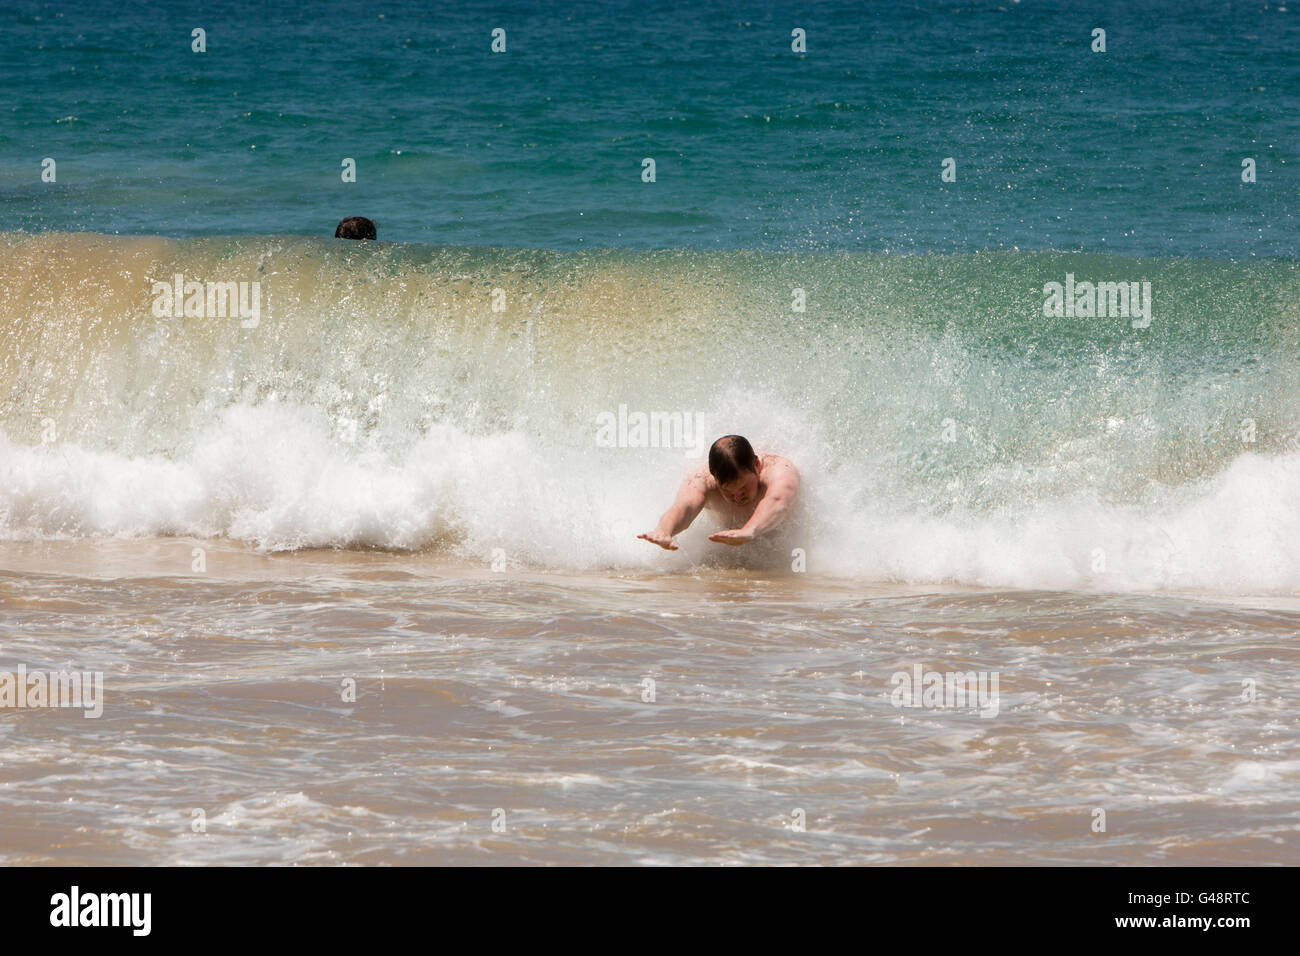 Sri Lanka, Mirissa beach, corpo uomo surf in potente onda Foto Stock